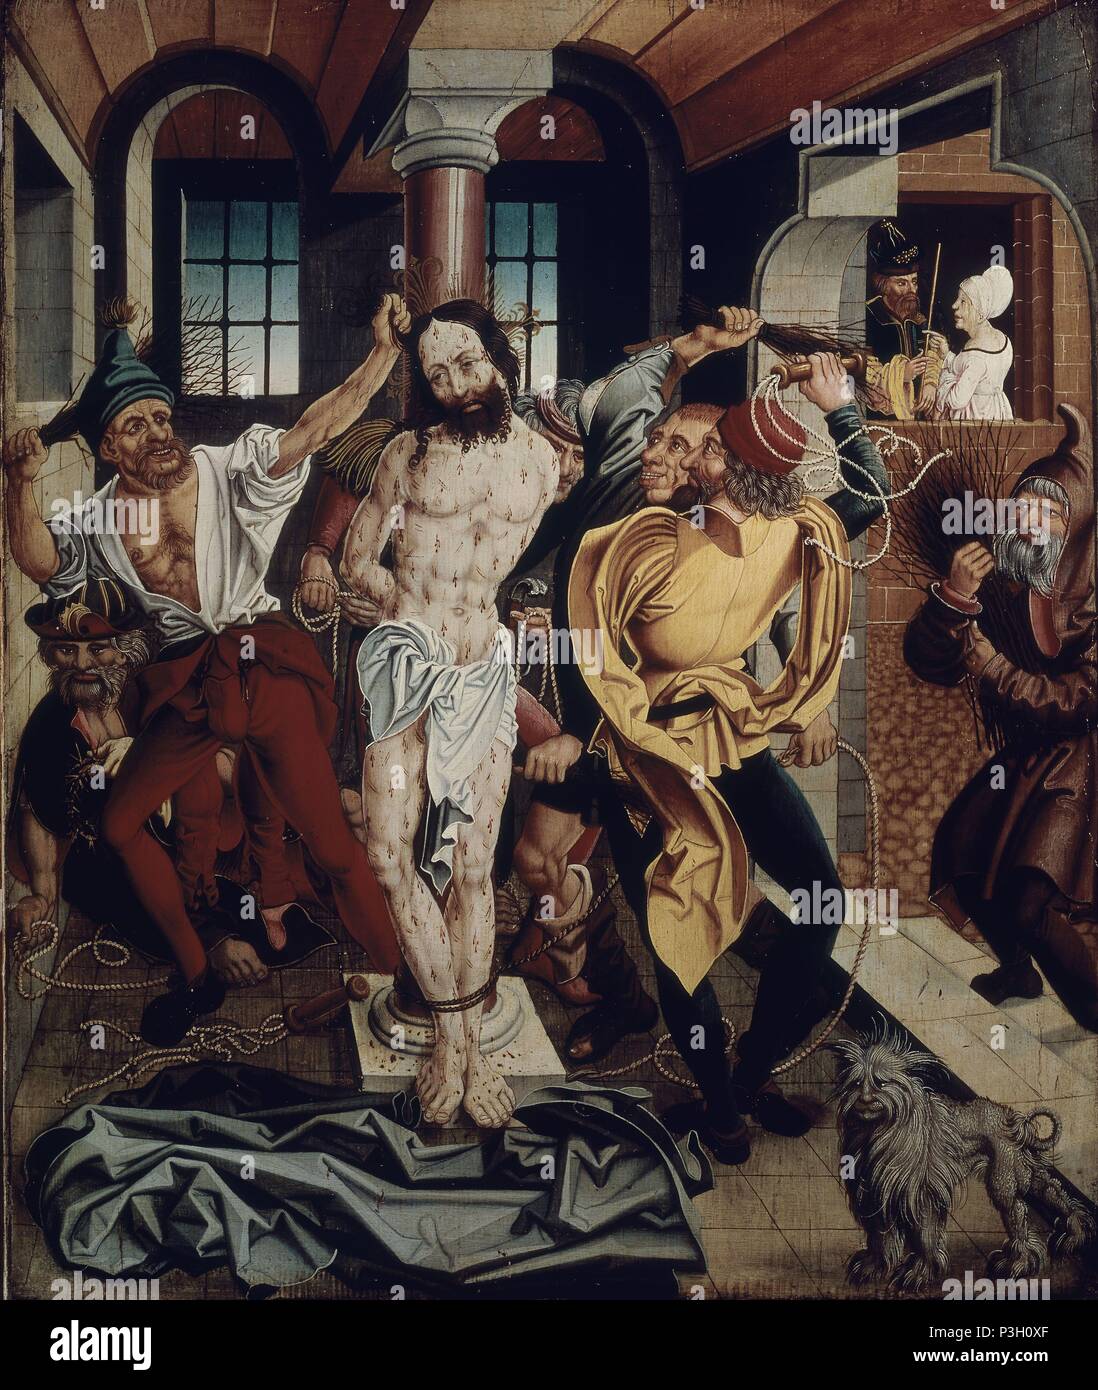 La flagellation du Christ - 16e siècle - huile sur panneau. Auteur : Paul Lautensack (1478-1558). Lieu : NUEVA RESIDENCIA, Munich, Allemagne. Aussi connu sous : FLAGELACION DE CRISTO. Banque D'Images